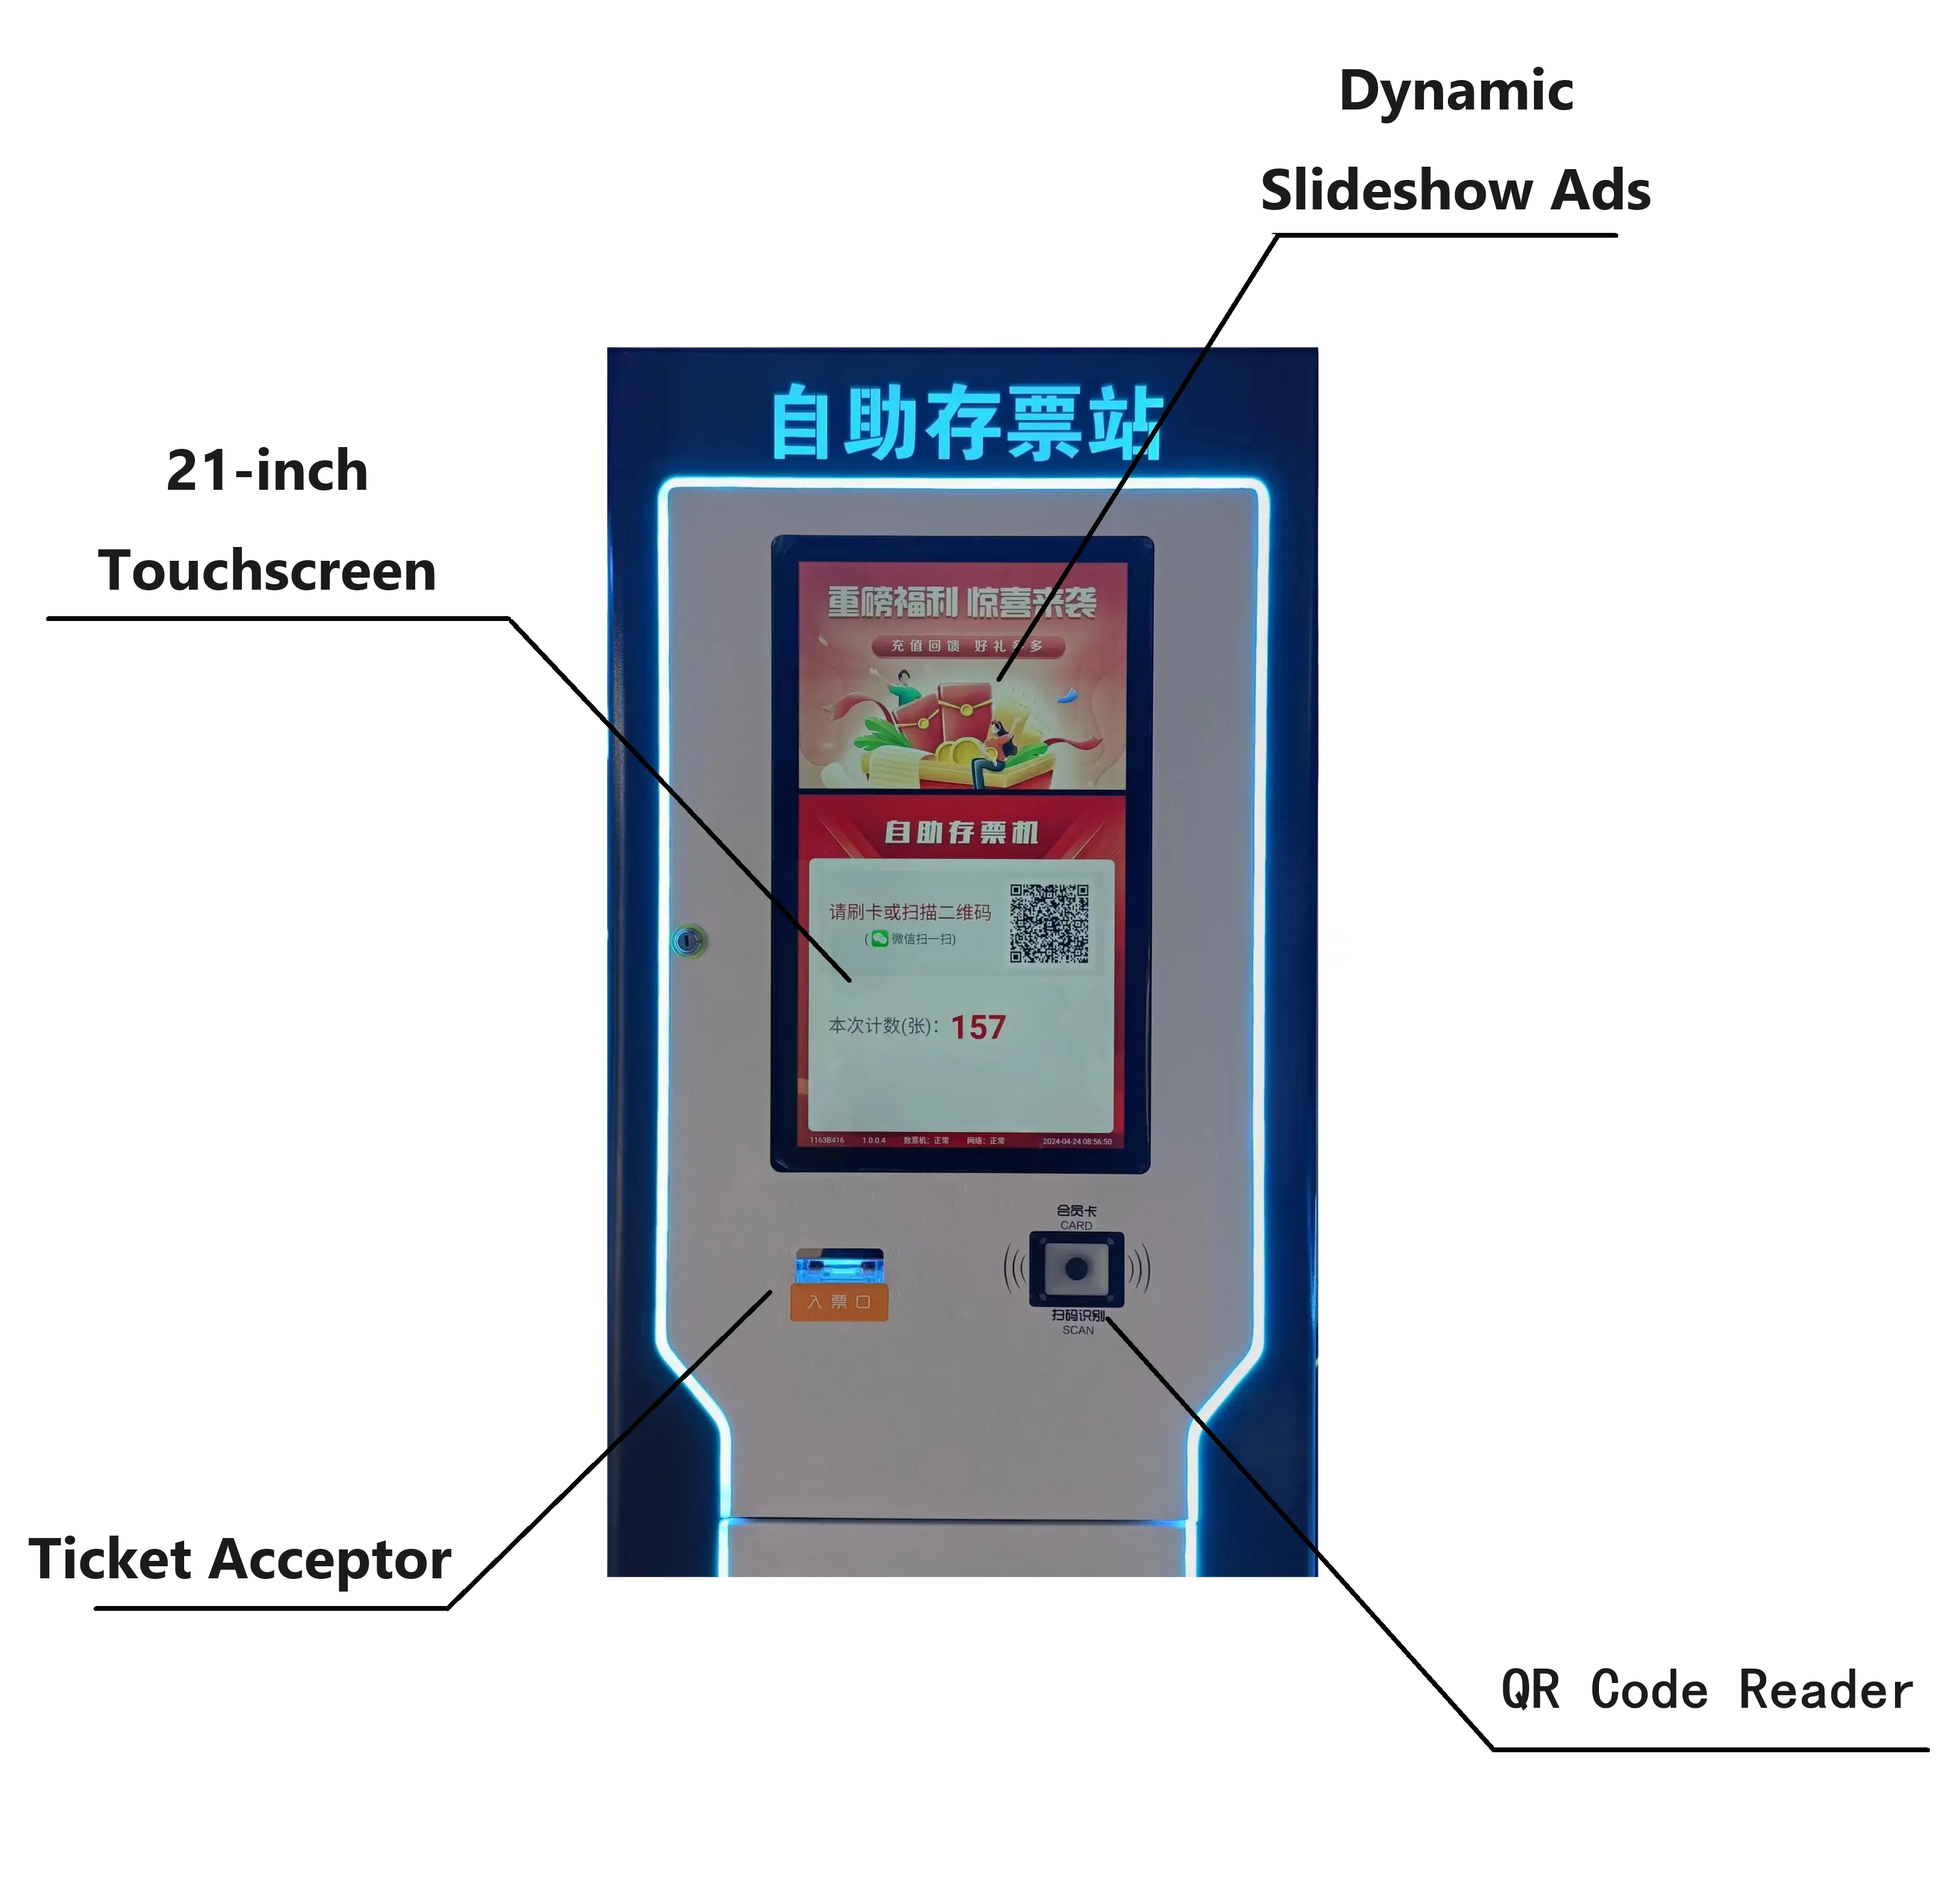 टिकट मोचन गेमिंग प्ले के लिए यिंगजिया 3 साइड आर्केड टिकट भंडारण मशीनों का आनंद लें